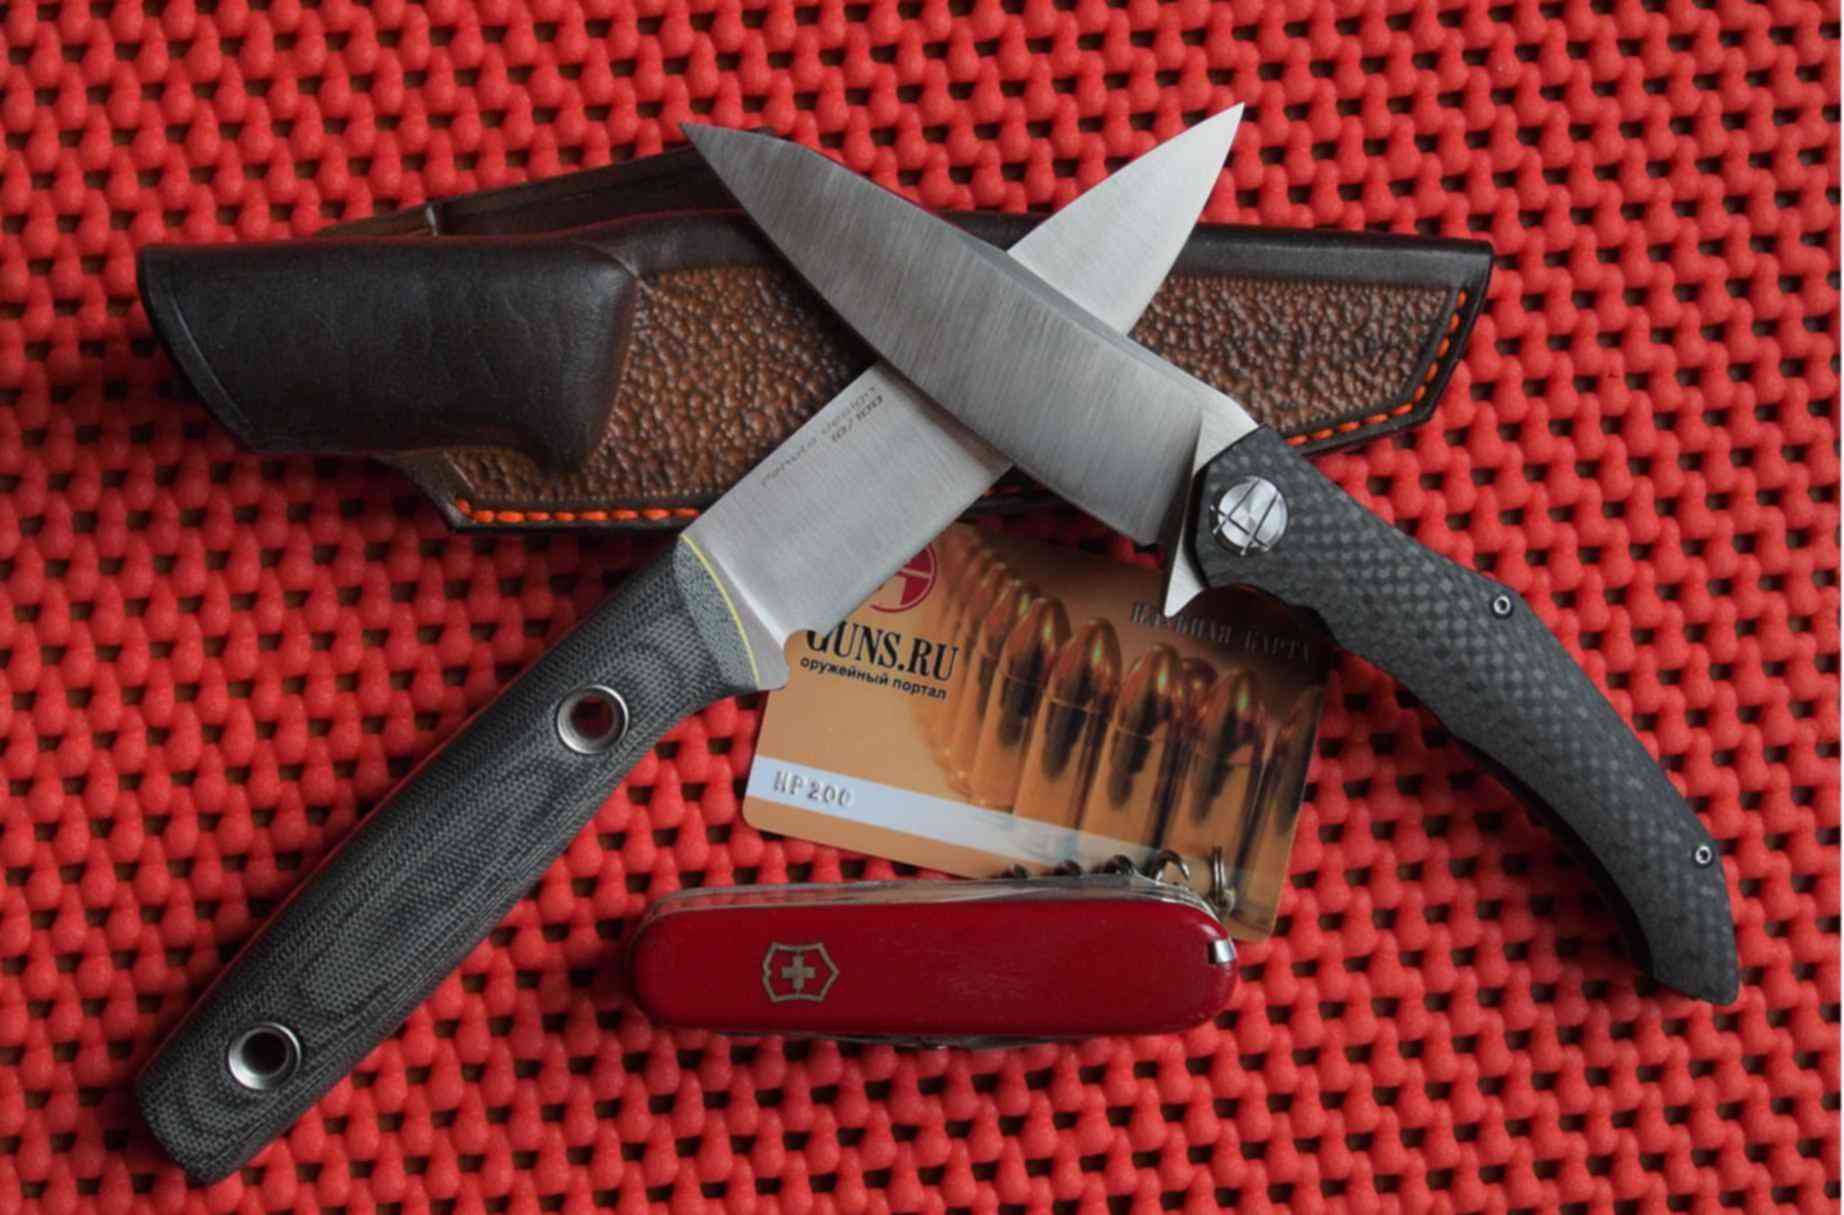 Нож Щепка. На ножах готовые проекты. TRC Щепка. Ножи созданные для форума Ганс ру.